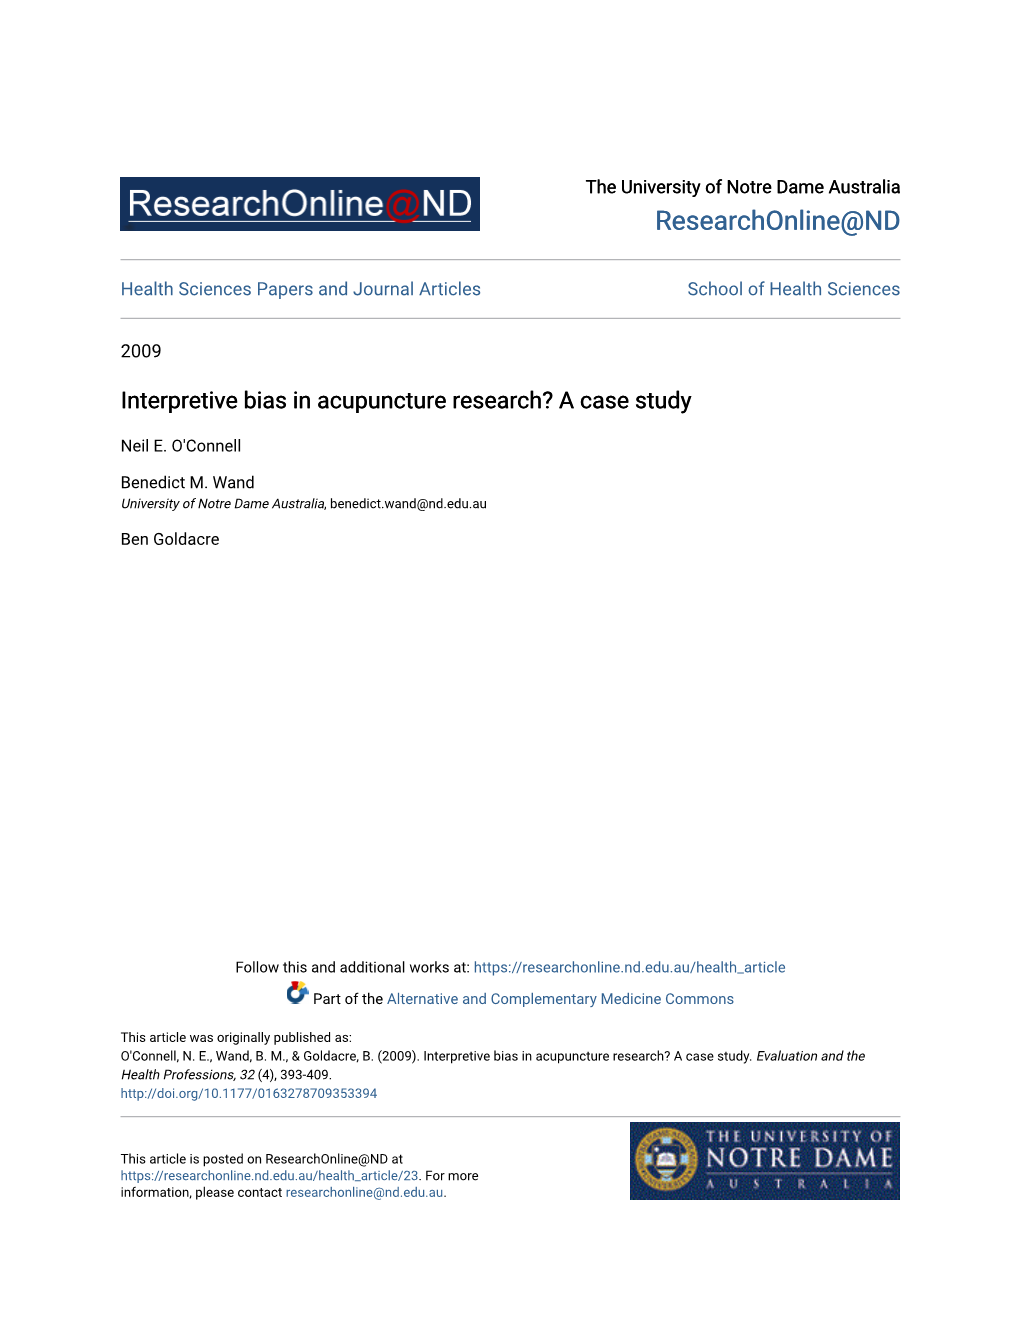 Interpretive Bias in Acupuncture Research? a Case Study